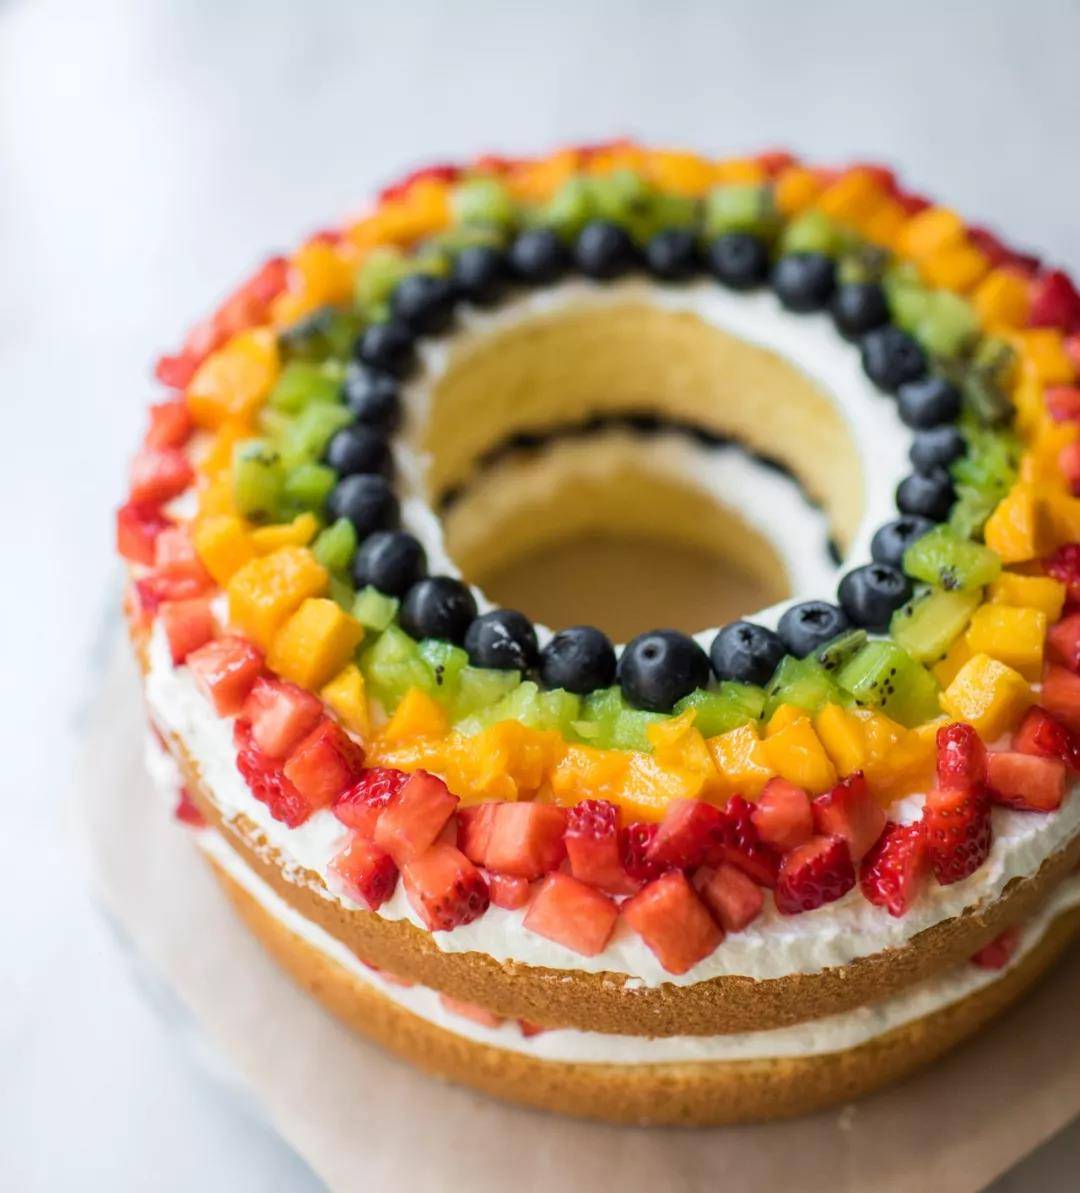 蛋糕/爱的彩虹-圆形水果蛋糕，新鲜水果装饰，拇指饼干围边 .适用于:恋情,生日,祝福,-七彩蛋糕